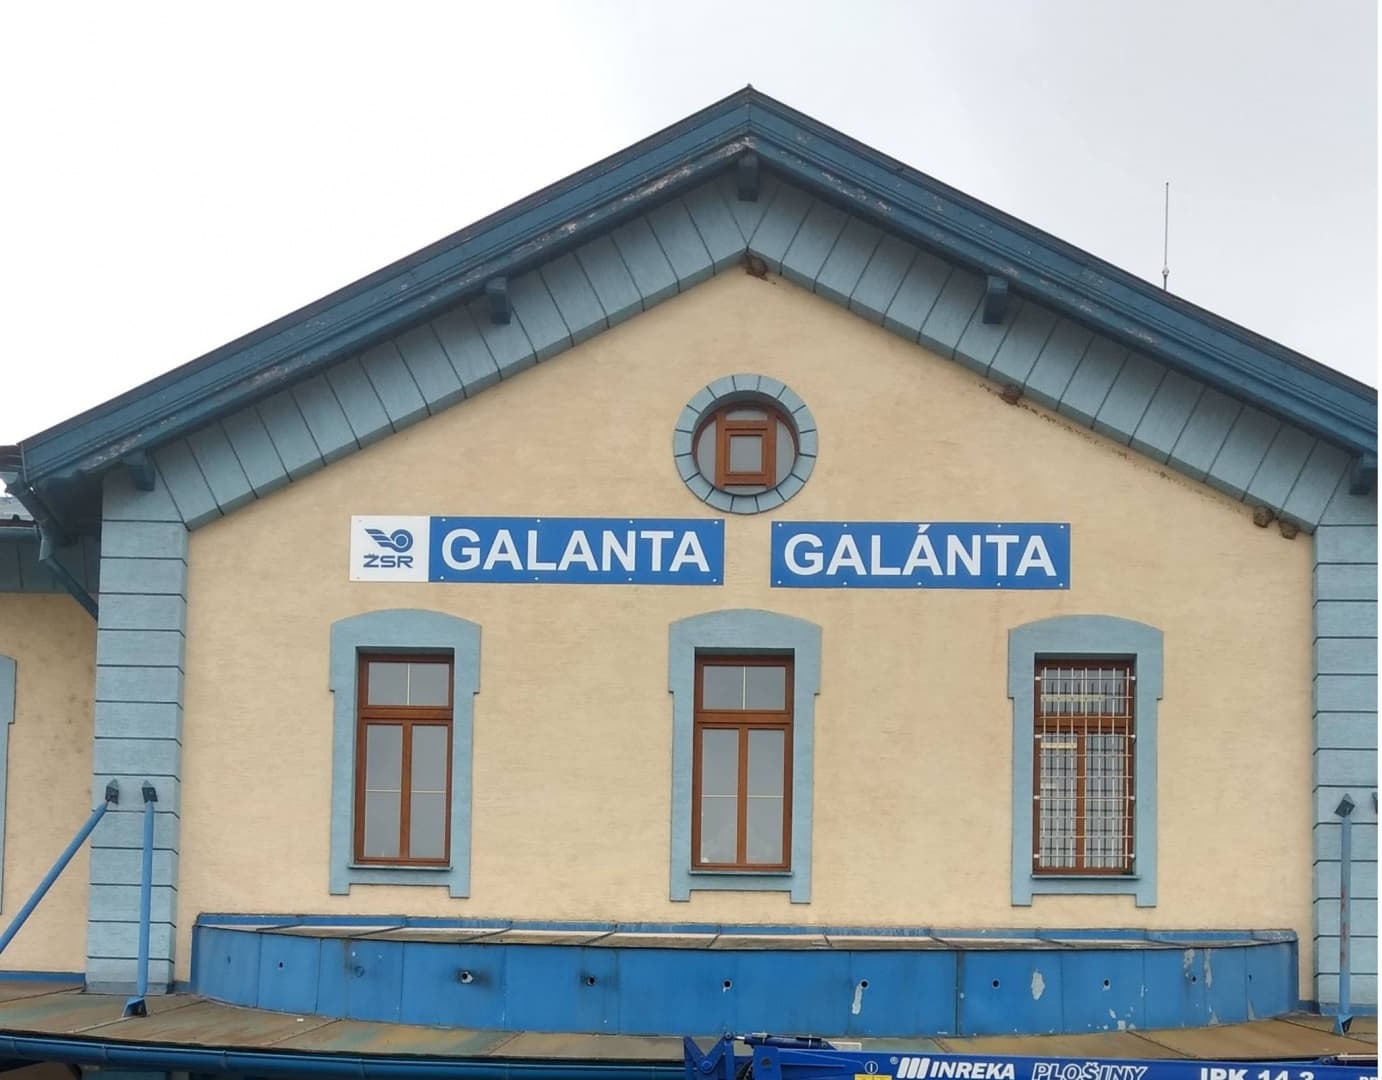 A galántai vasútállomásra is kihelyezték a kétnyelvű helységnévtáblát